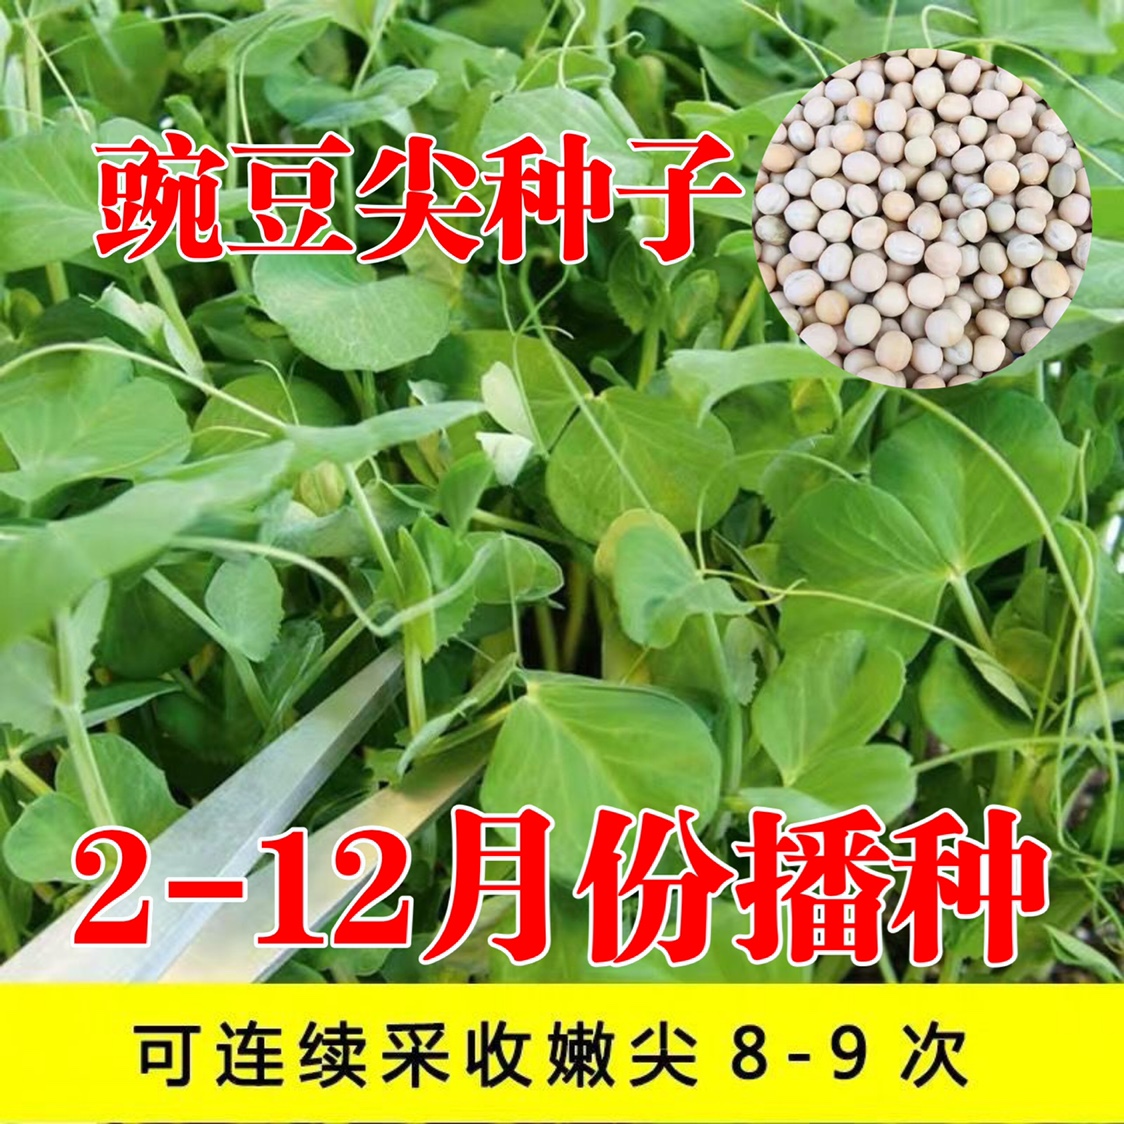 豌豆尖种子早熟高产多次采收豌豆苗豆芽菜种盆栽水培易种蔬菜种子 - 图1